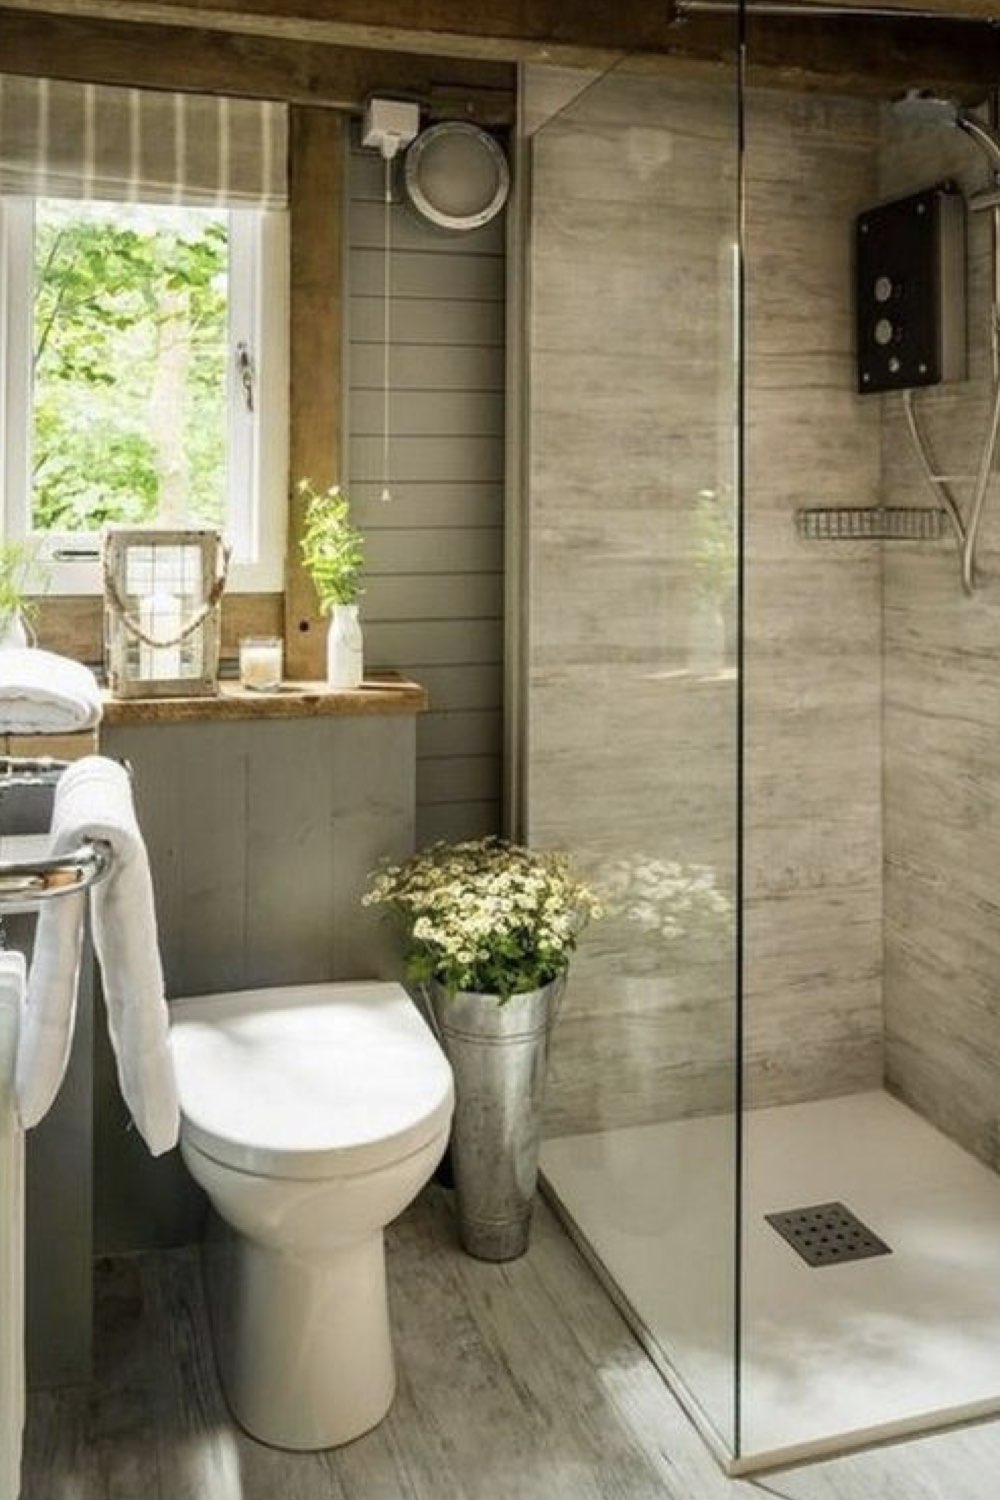 salle de bain douche deco detente receveur plat carrelage pierre lambris toilettes couleur nature simple et chic